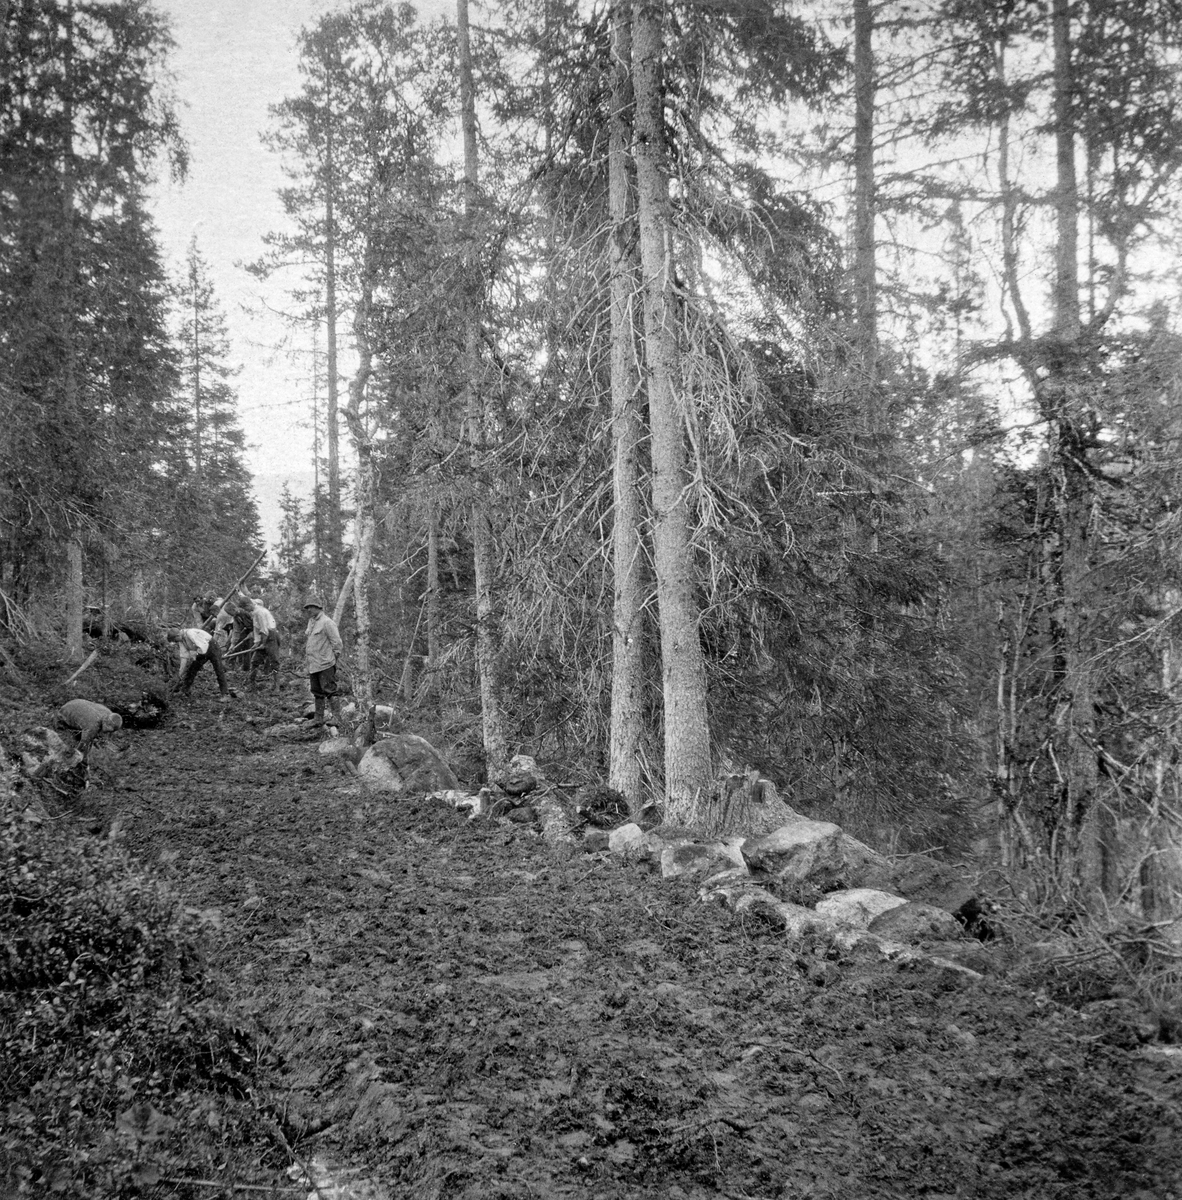 Skogsbilvegbygging i Furudal statsskog i Namdalseid i Nord-Trøndelag.  To fotografier fra samme vegbyggingsprosjekt er montert på samme kartotekkort i Statsskog-arkivet og utstyrt med samme arkivnummer, "791593". 

Fotrografiiet til venstre vister tre unge menn, en iført busserull og to i lyse skjorter, som arbeider med spade og hakker langsetter en avskoget trase i granskogen.  Karene fjerner antakelig lyng og ujevnheter på den lyngbevokste skogsbotnen, som skal bli veggrunn.  Bak de tre unge mennene står en skogfunksjonær med lys vindjakke og hatt og overvåker arbeidet.  Vegtraseen går gjennom granskog med innslag av bjørk, og med blåbærlyng som undervegetasjon. 

Fotografiet til høyre på kartotekkortet er fra samme vegbyggingsprosjekt.  Også her sees en del unge menn, muligens elever fra Steinkjer skogskole, i arbeid med hakker og spader under oppsyn av en skogfunksjonær i lys vindjakker og hatt.  De har planert vegtraseen og rullet større steinblokker til den nedoverskrånende sida av vegbanen. 